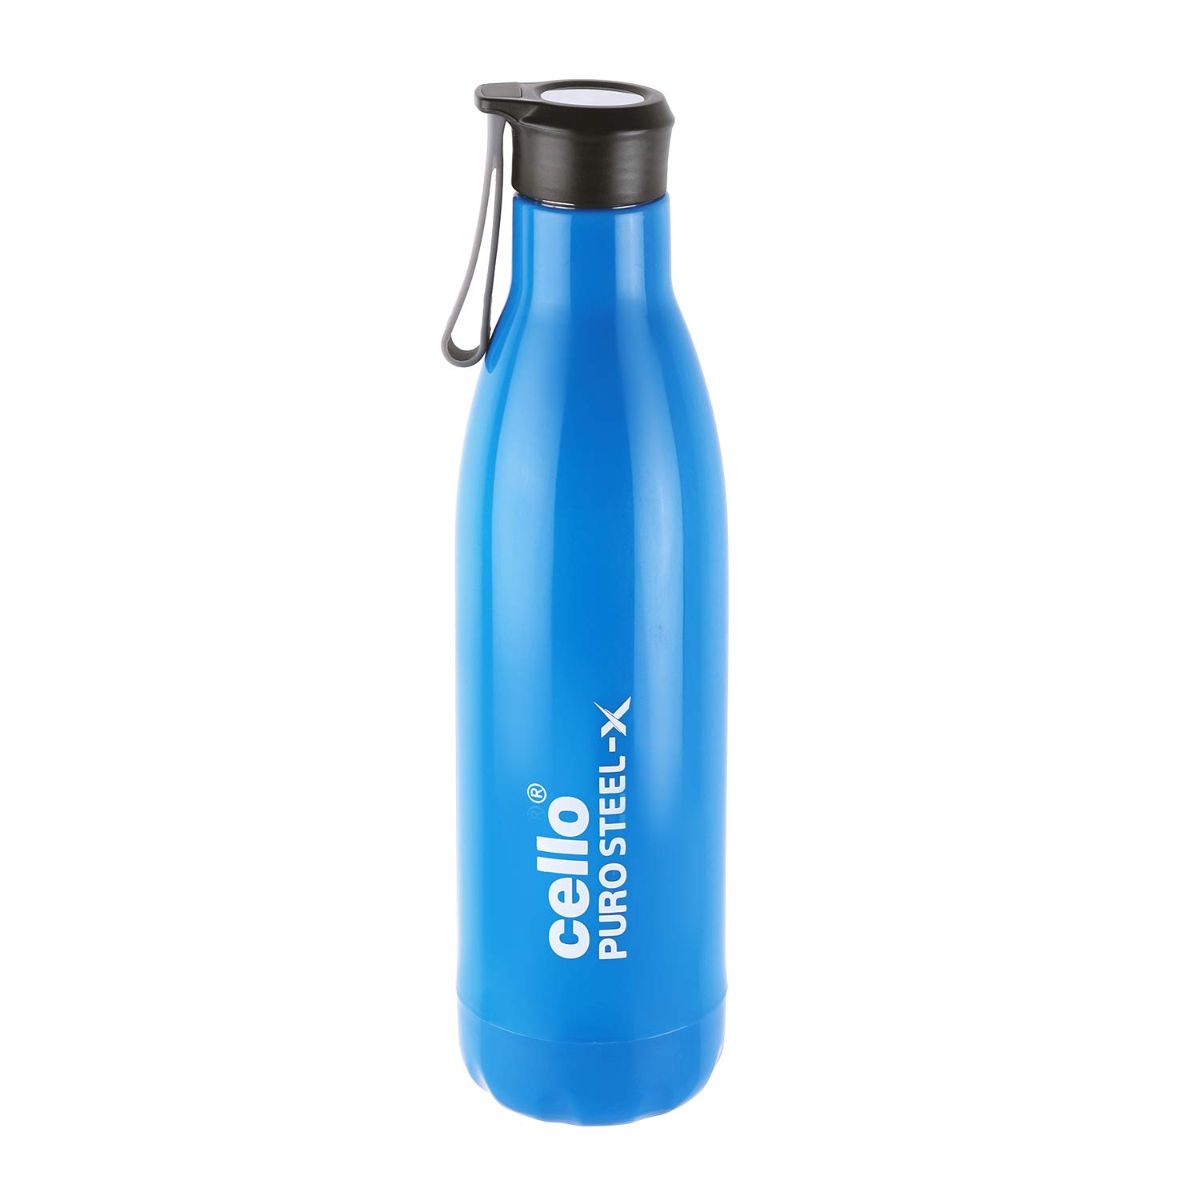 Puro Steel-X Rover 900 Water Bottle, 720ml Blue / 720ml / 1 Piece